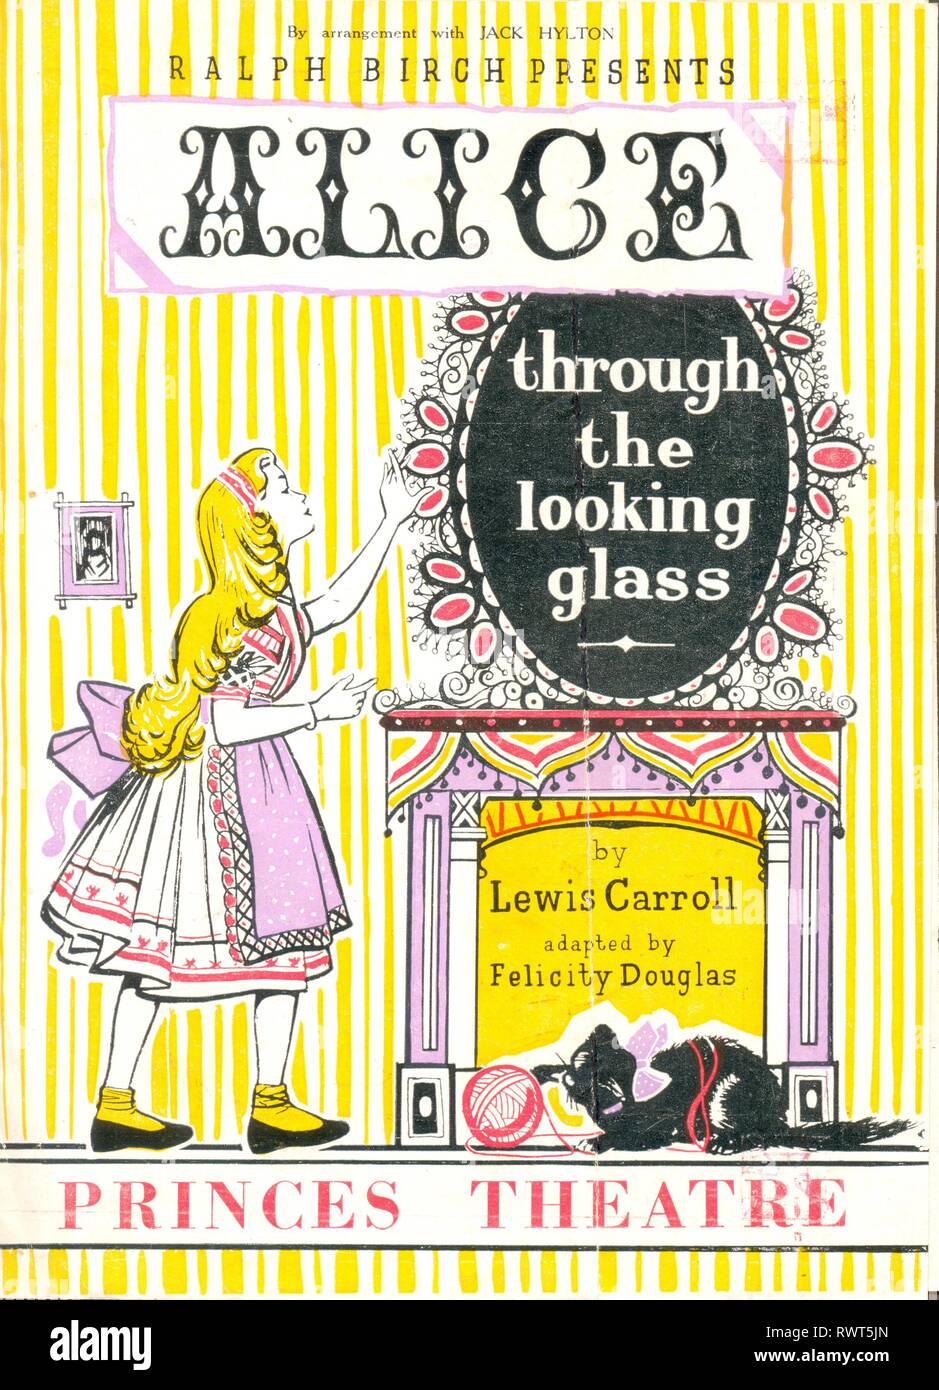 Programm für Alice Through the Looking Glass von Lewis Carroll durchgeführt im Princes Theatre, London 1954 Stockfoto